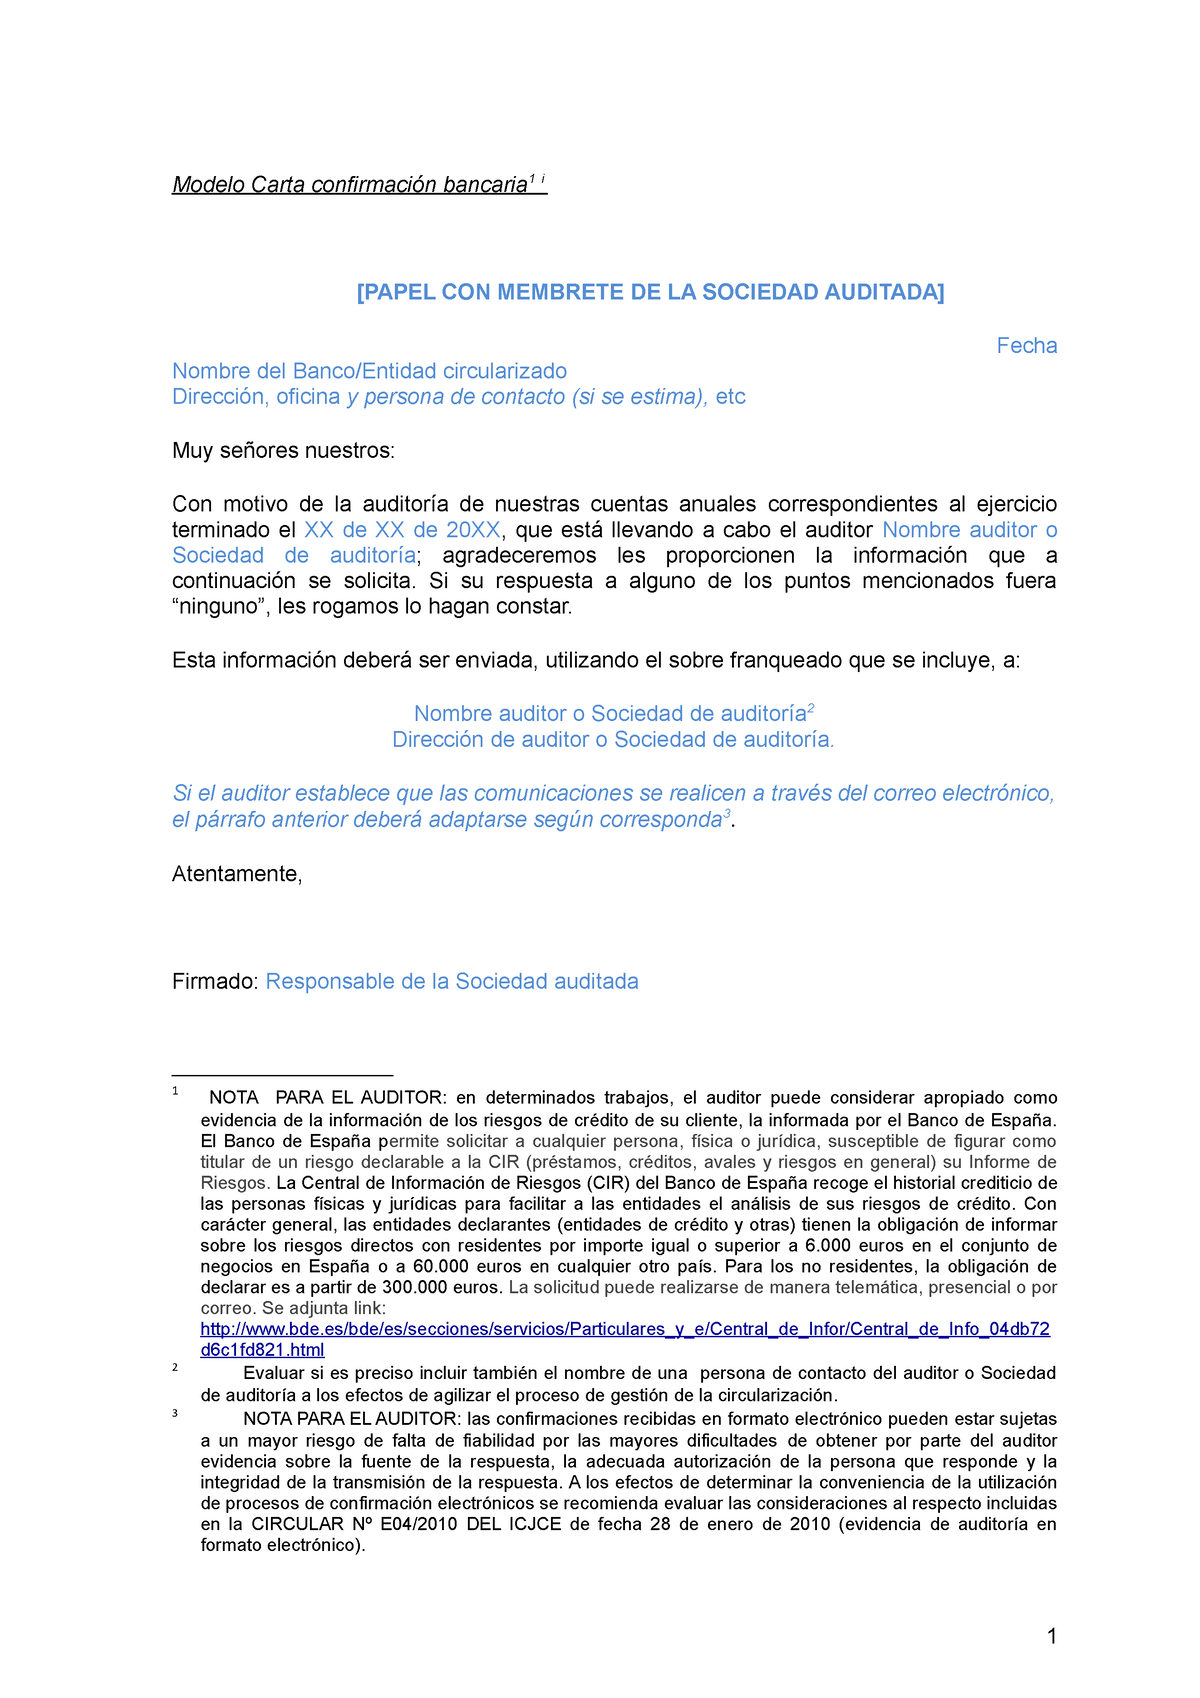 Modelocartaconfirmacionbancaria - Modelo Carta confirmación bancaria 1 i  [PAPEL CON MEMBRETE DE LA - Studocu